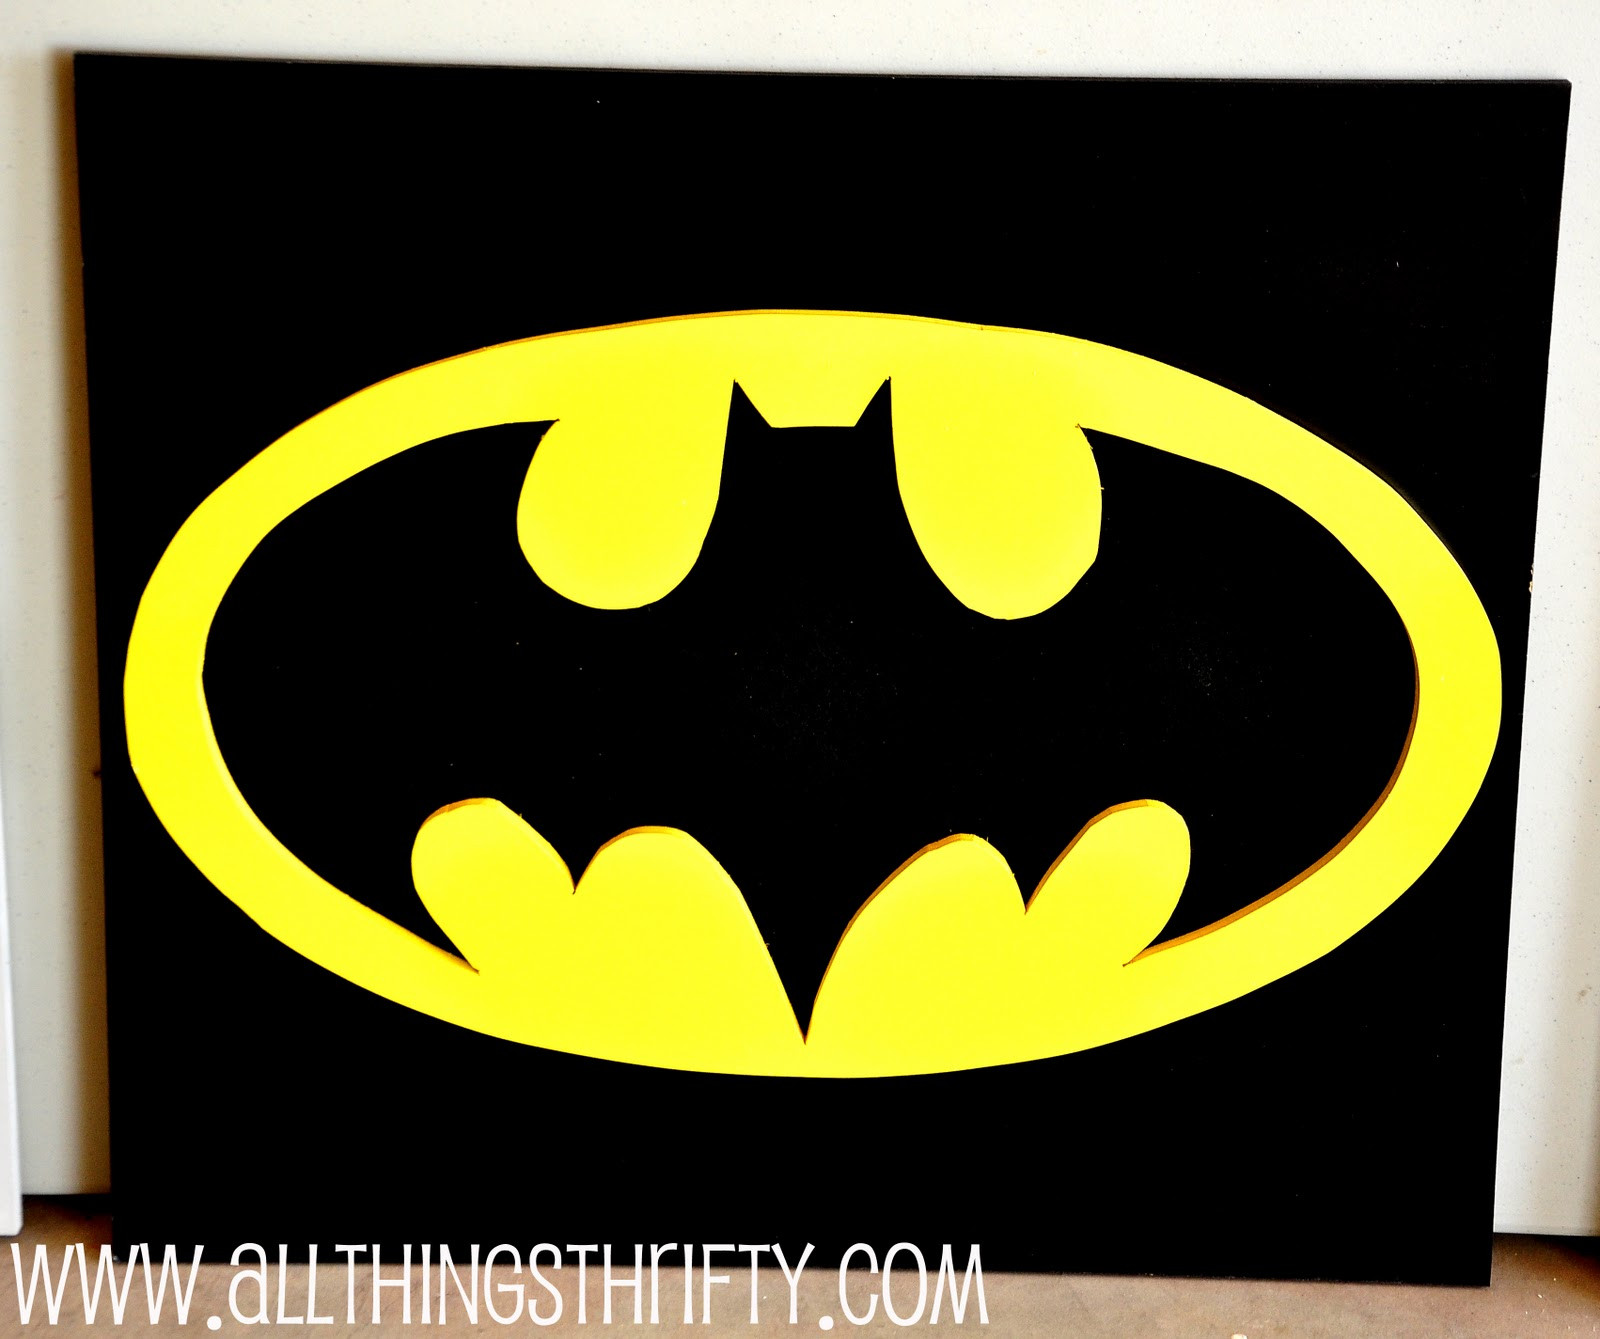 Best ideas about Batman Wall Art
. Save or Pin Batman Wall Art Now.